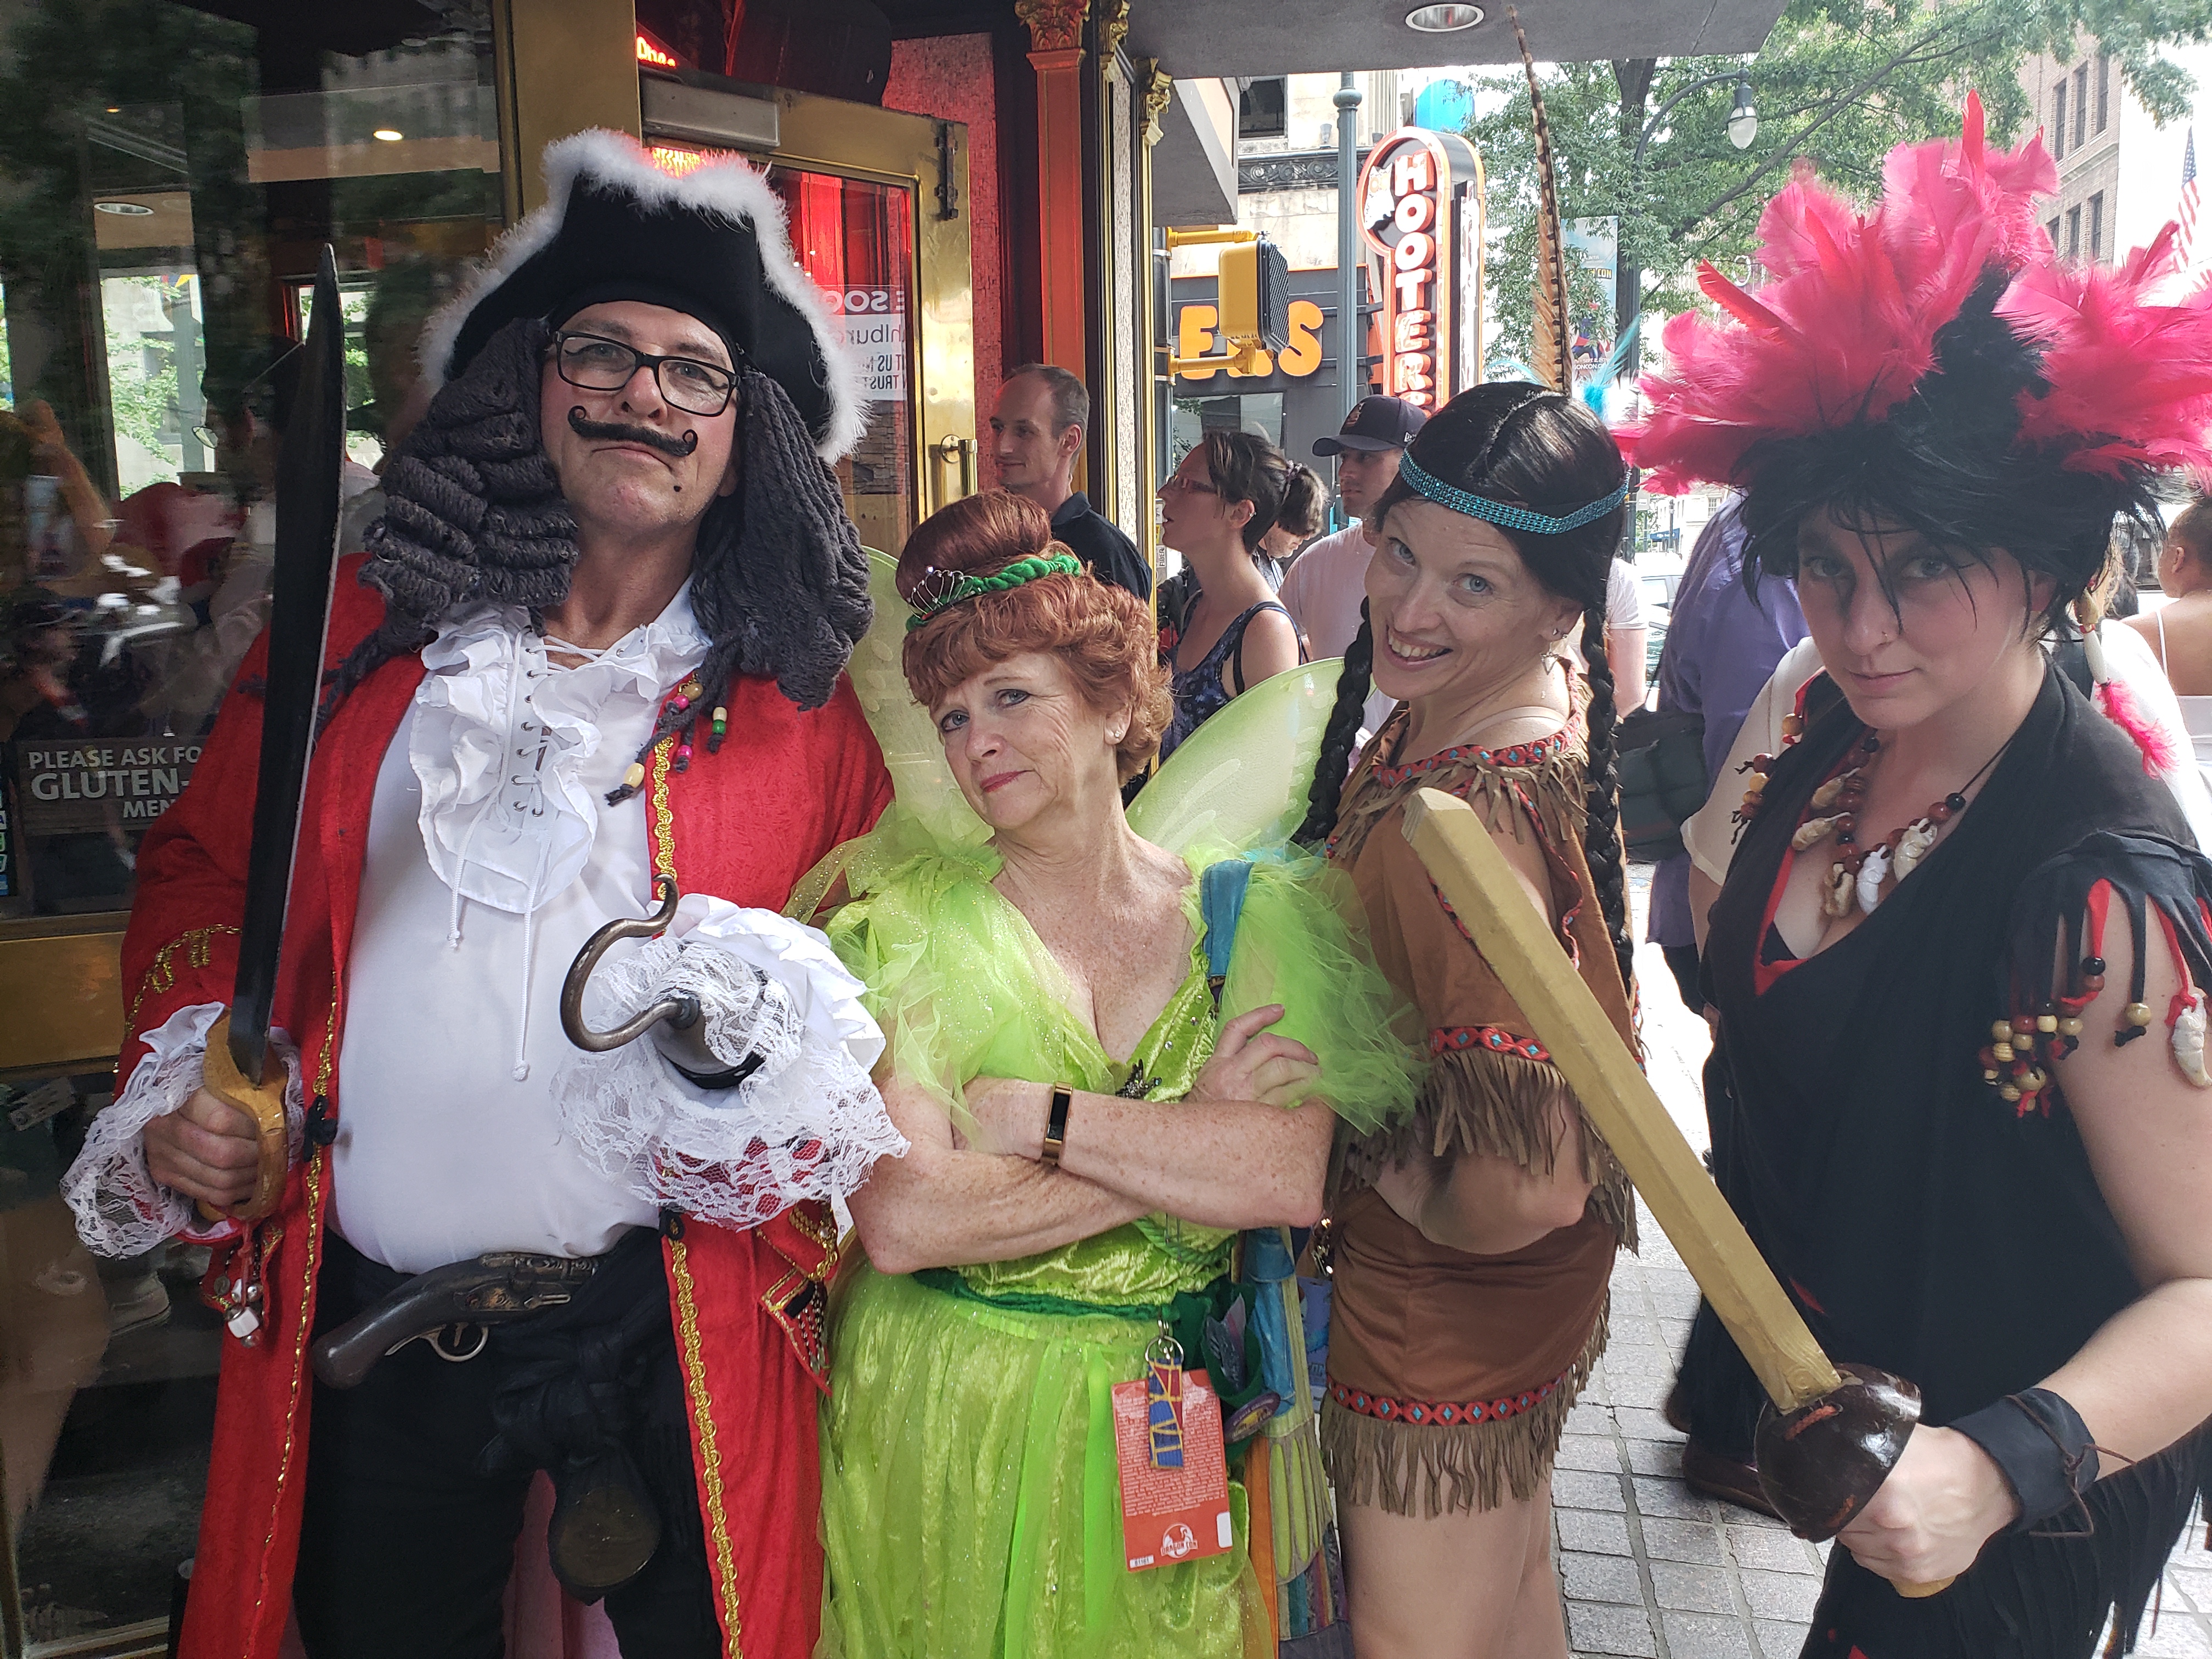 Hook/Peter Pan cosplay group